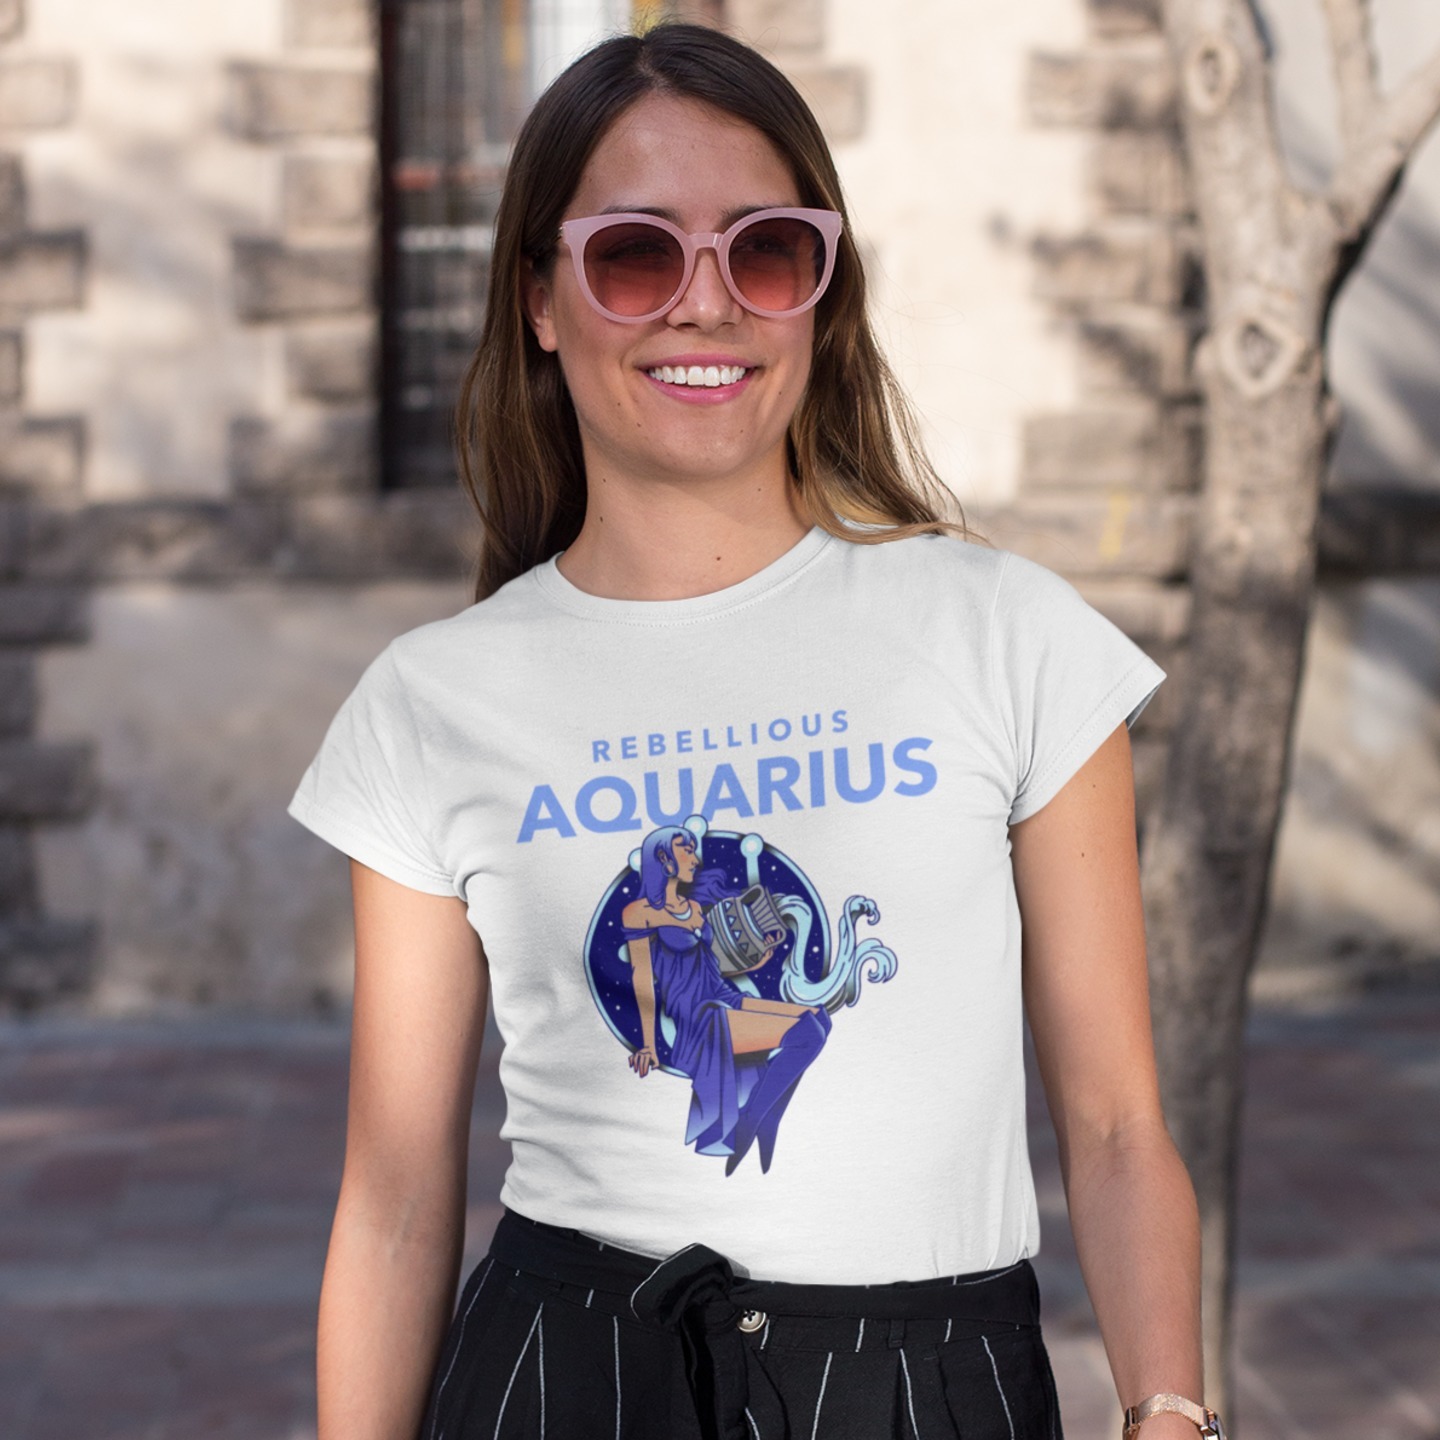 Aquarius - Rebellious T-Shirt